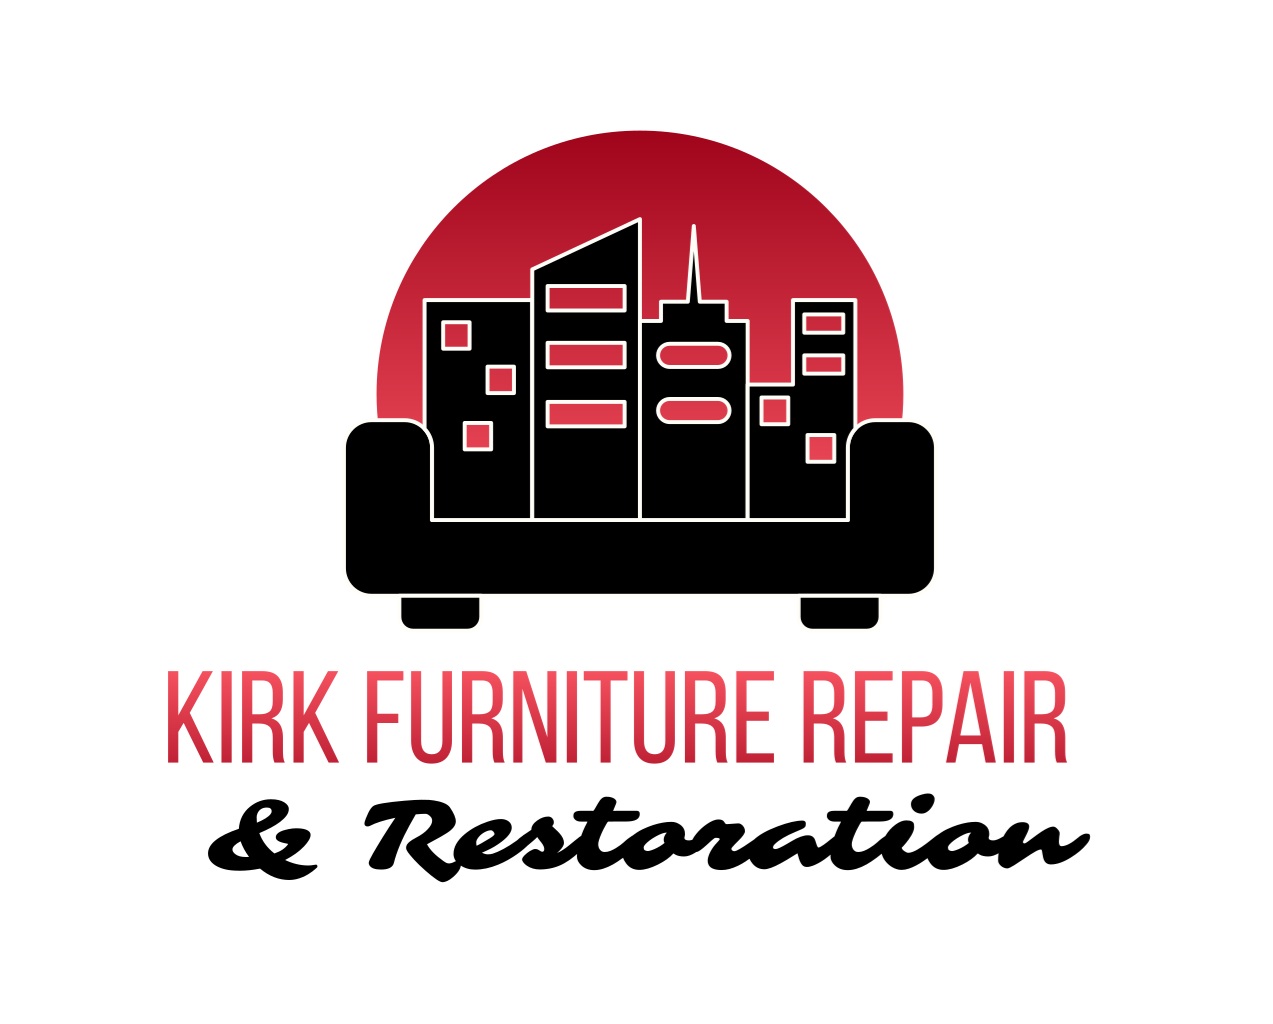 Kirk Furniture Repair and Restoration